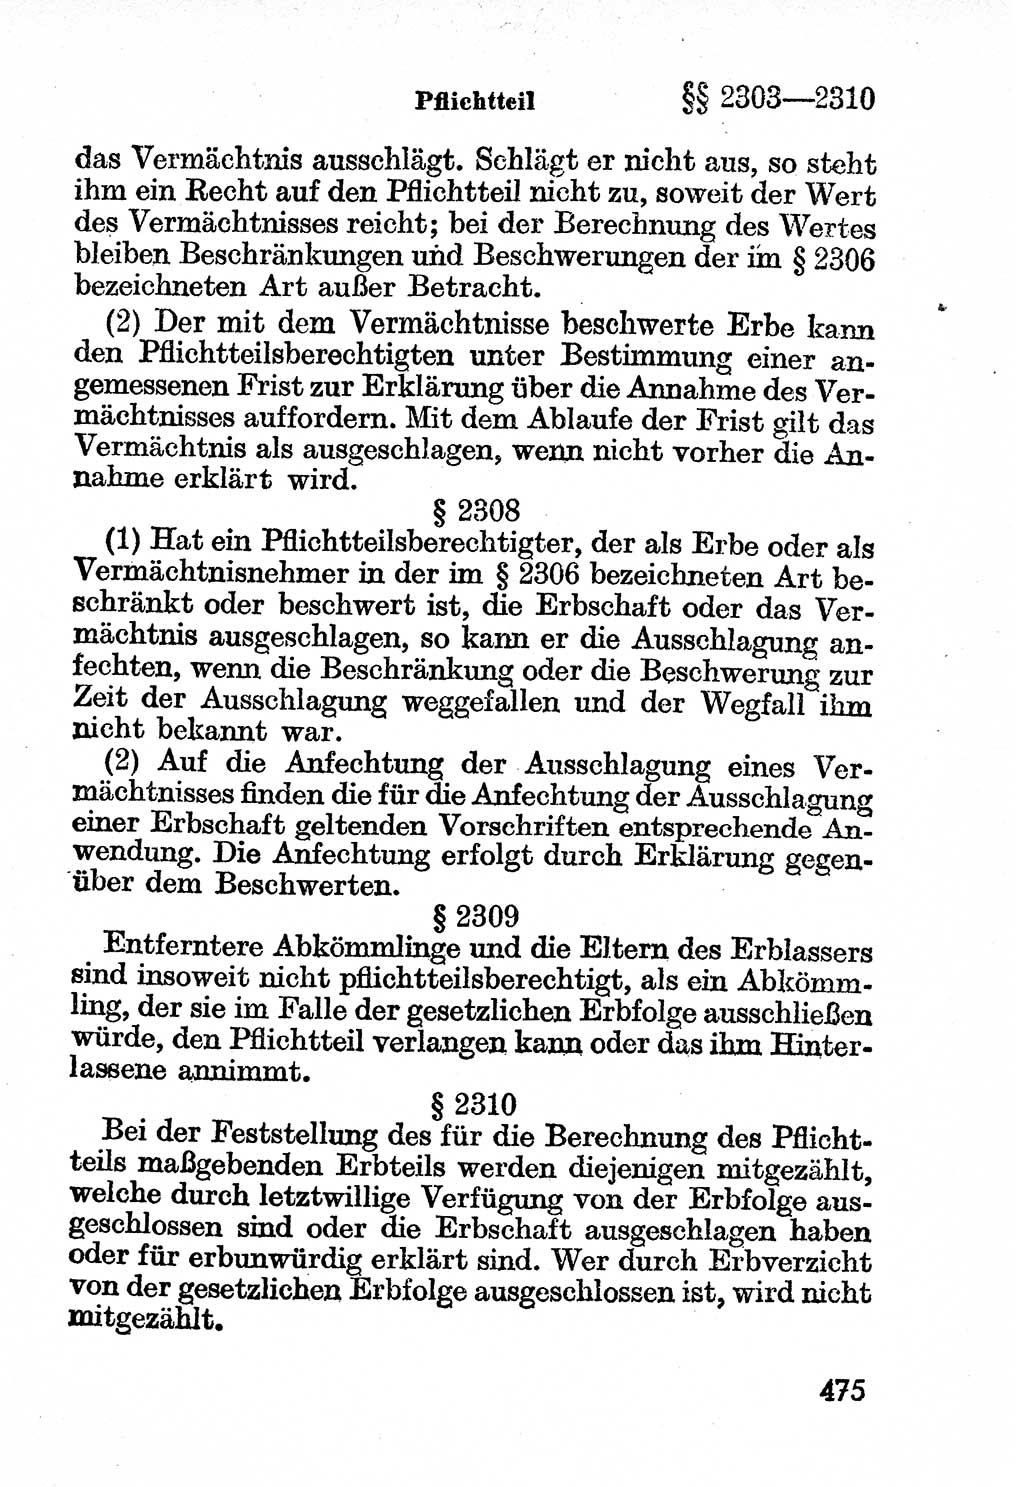 Bürgerliches Gesetzbuch (BGB) nebst wichtigen Nebengesetzen [Deutsche Demokratische Republik (DDR)] 1956, Seite 475 (BGB Nebenges. DDR 1956, S. 475)